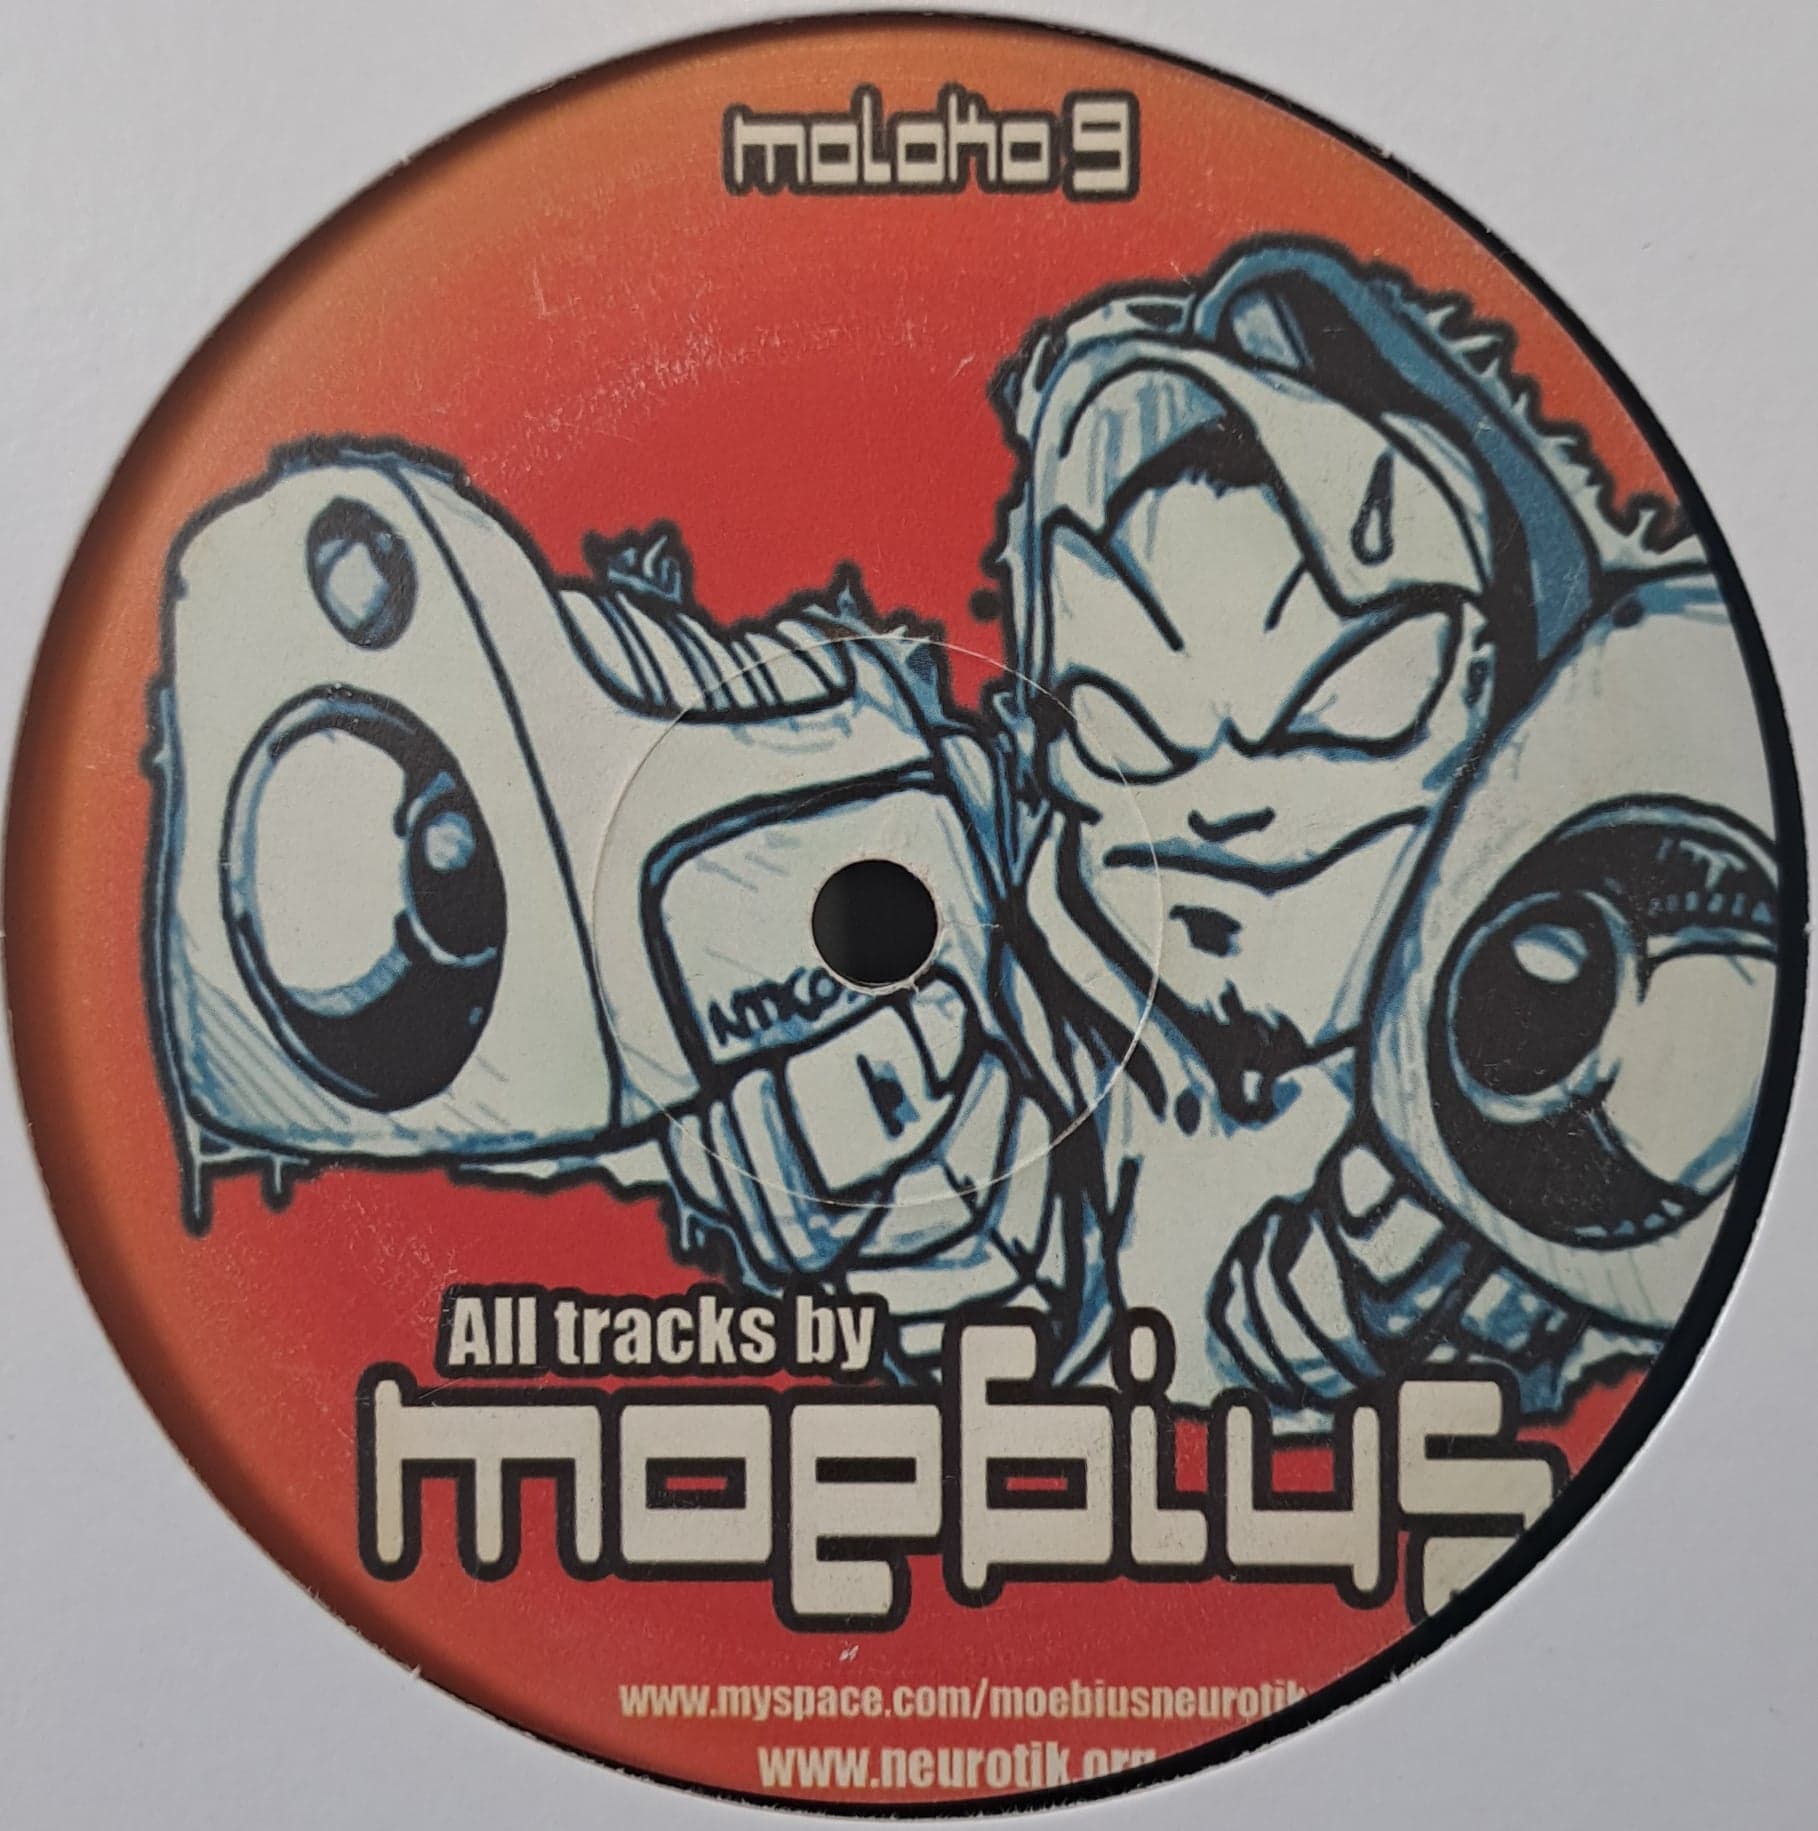 Moloko 09 - vinyle freetekno